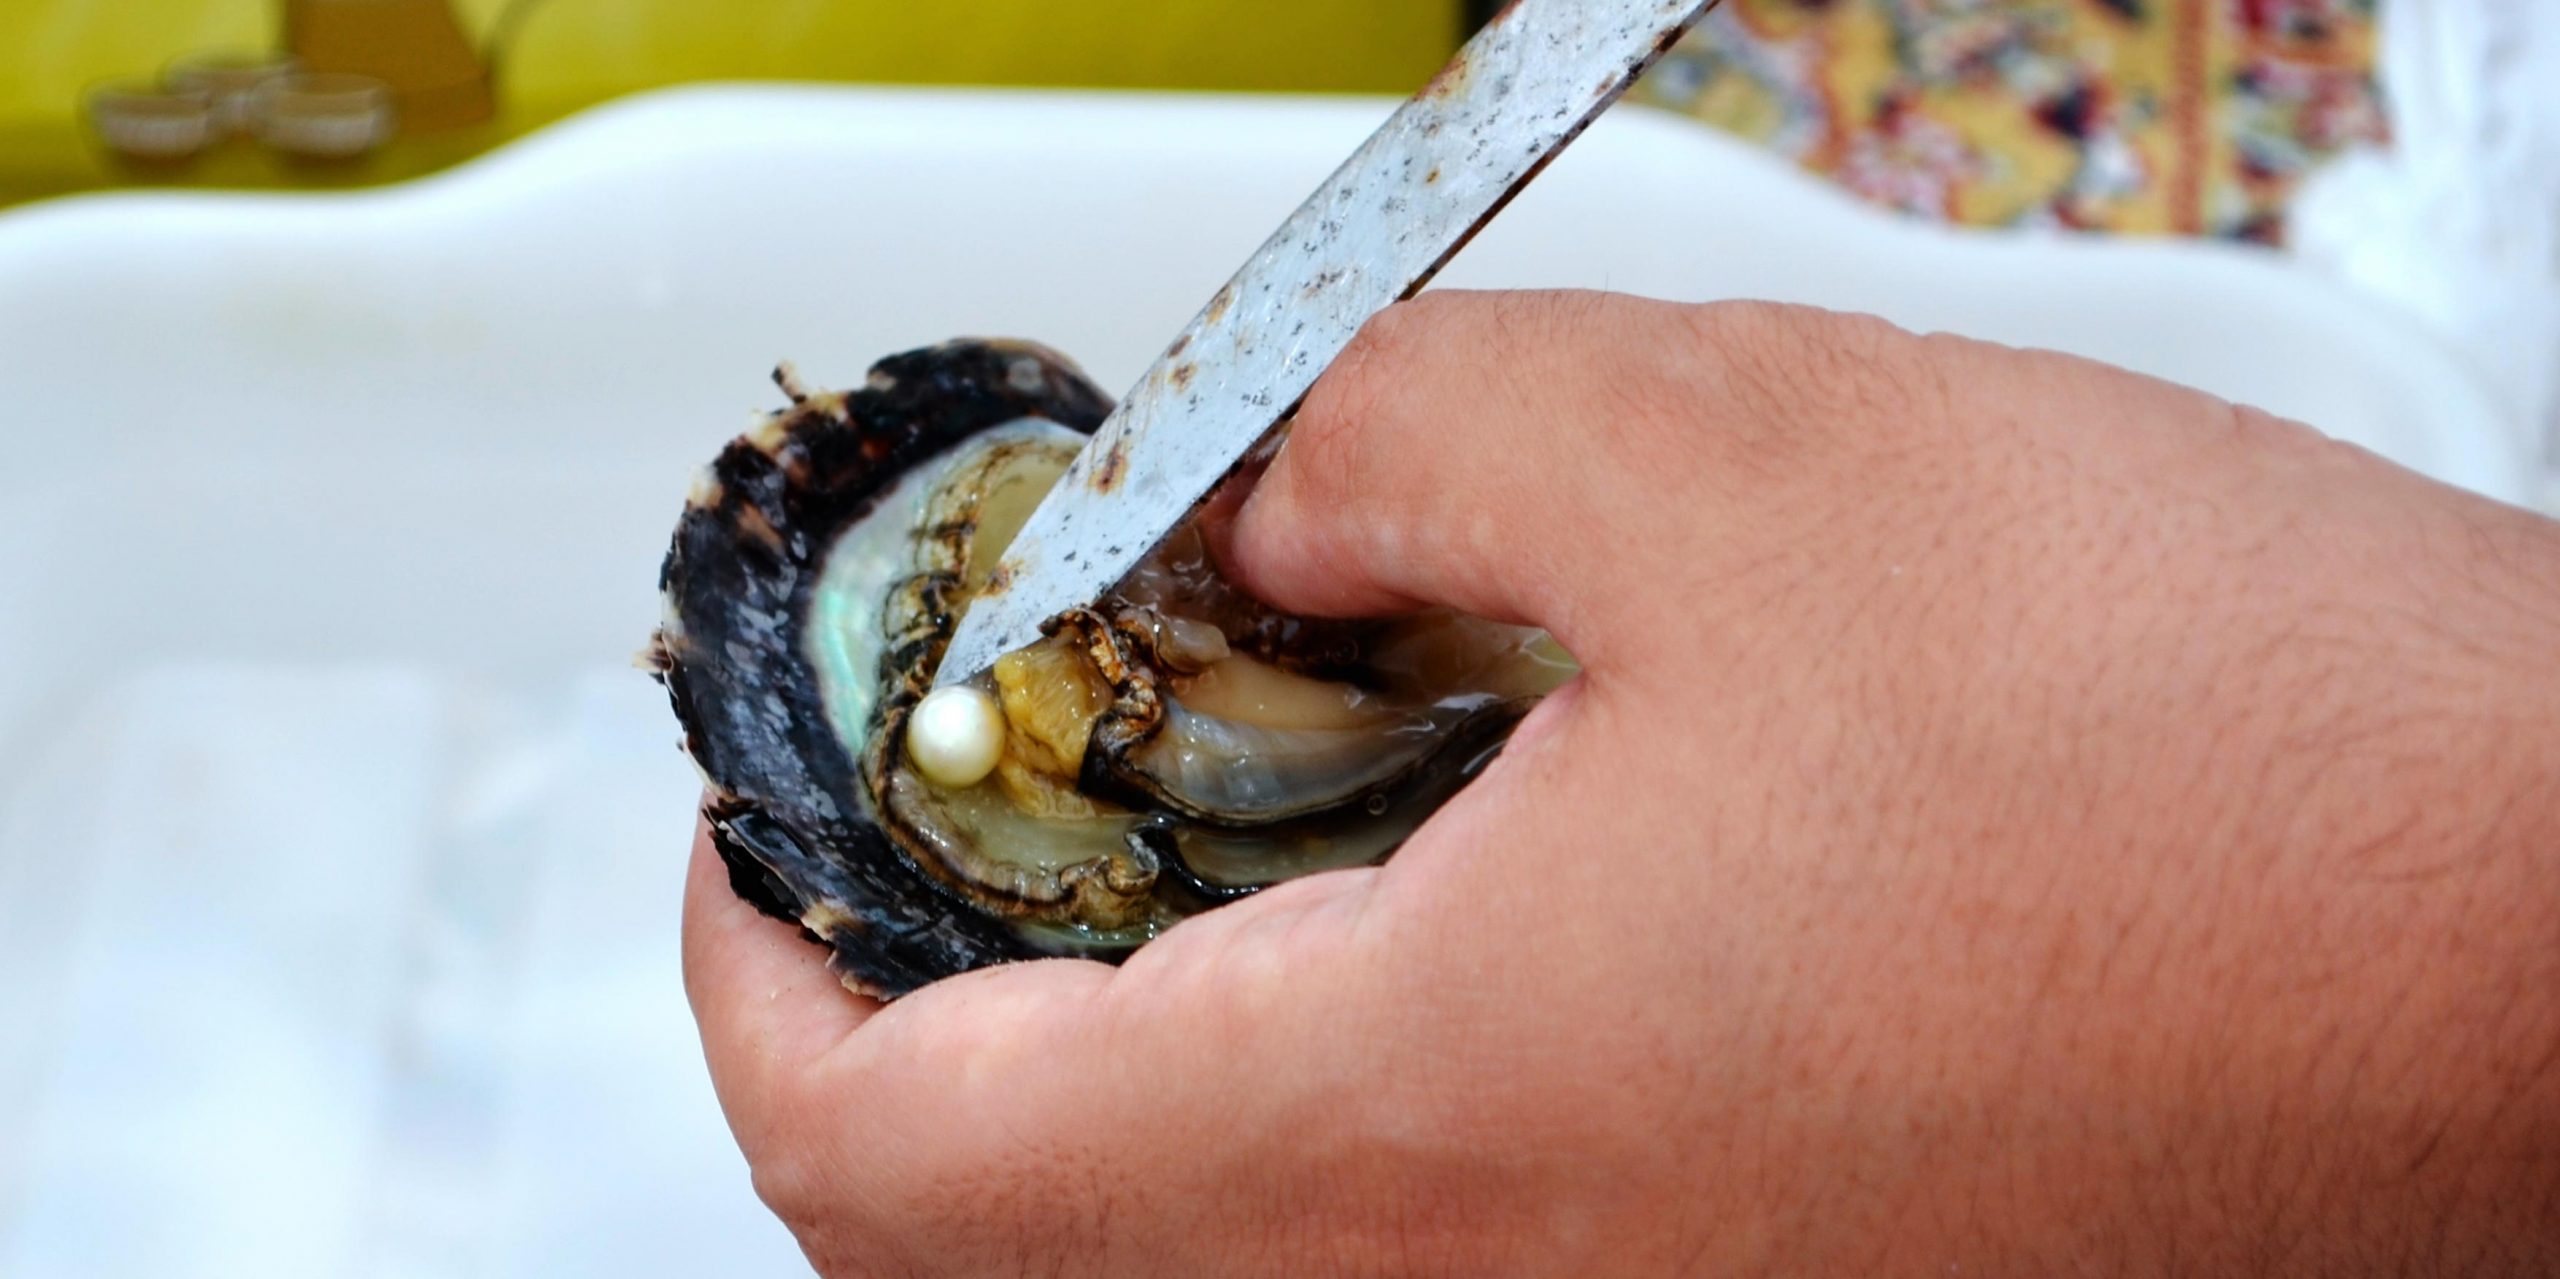 Жемчуг: как моллюски производят драгоценные камни?